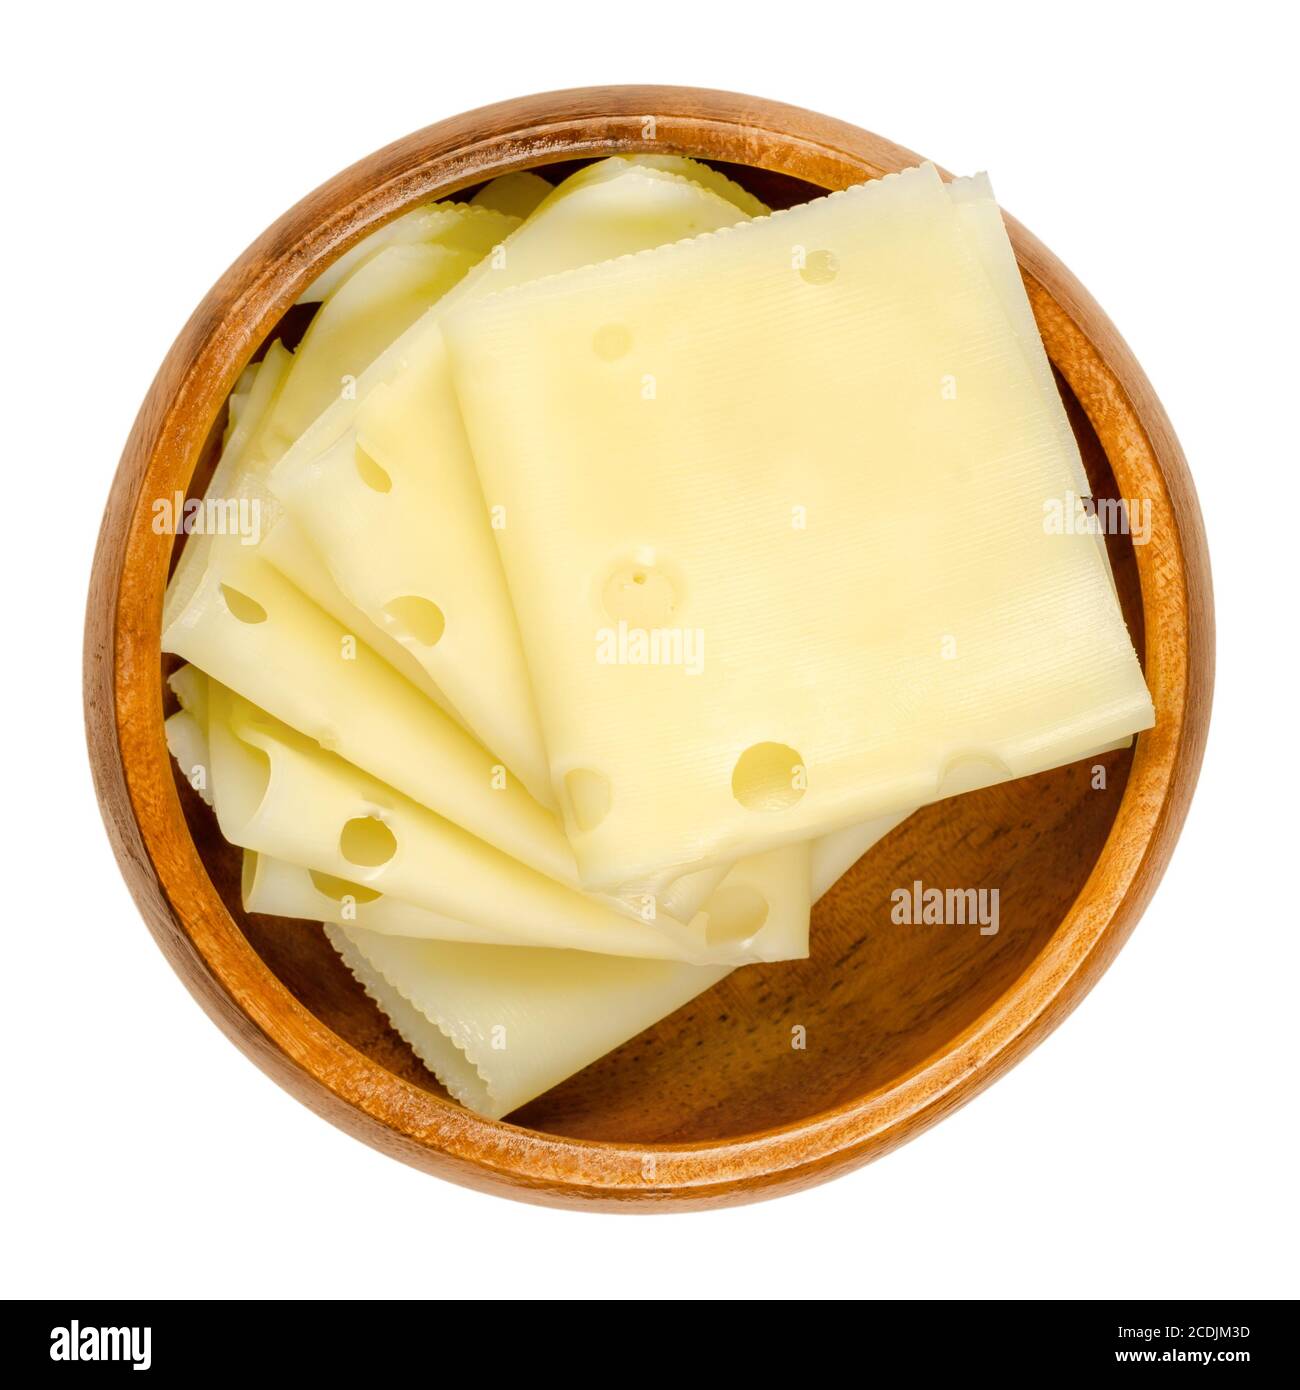 Affettare il formaggio in una ciotola di legno. Porzioni piegate di Emmenthal o Emmentaler. Formaggio svizzero giallo con buchi, medio-duro, dal sapore dolce salato. Foto Stock